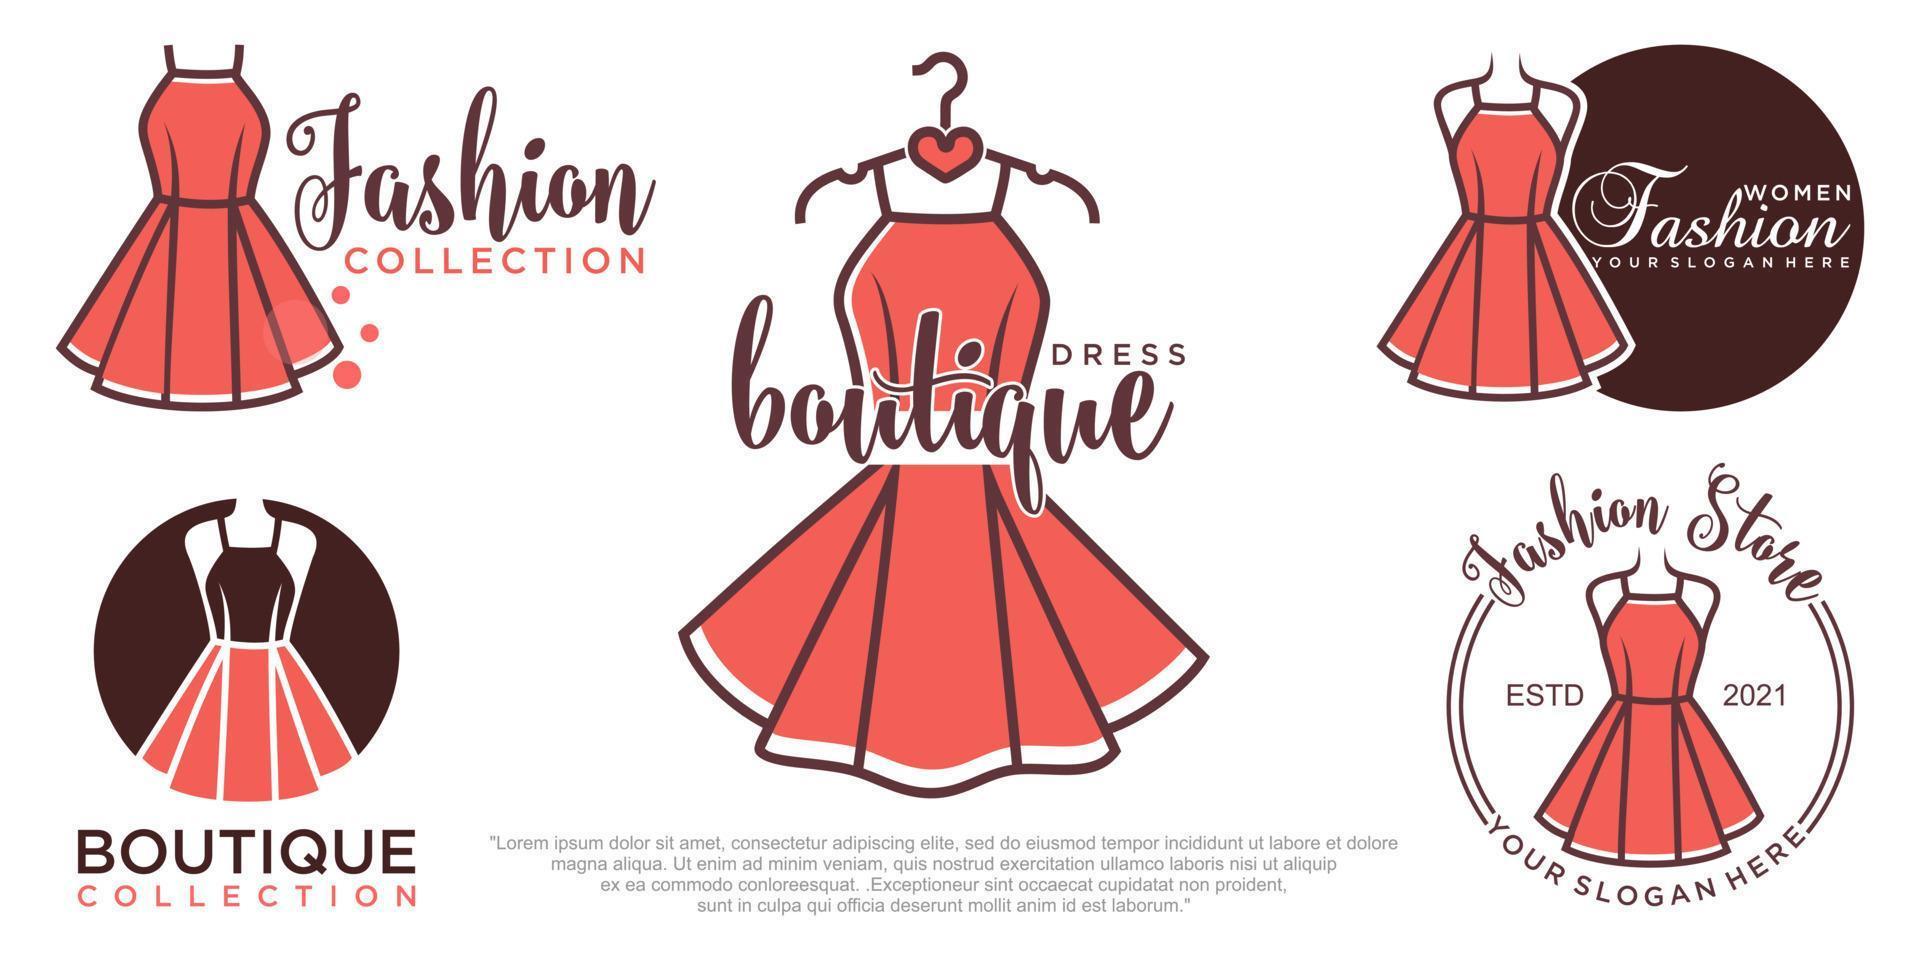 klänning boutique eller mode ateljén salong vektor ikonuppsättning logotyp formgivningsmall